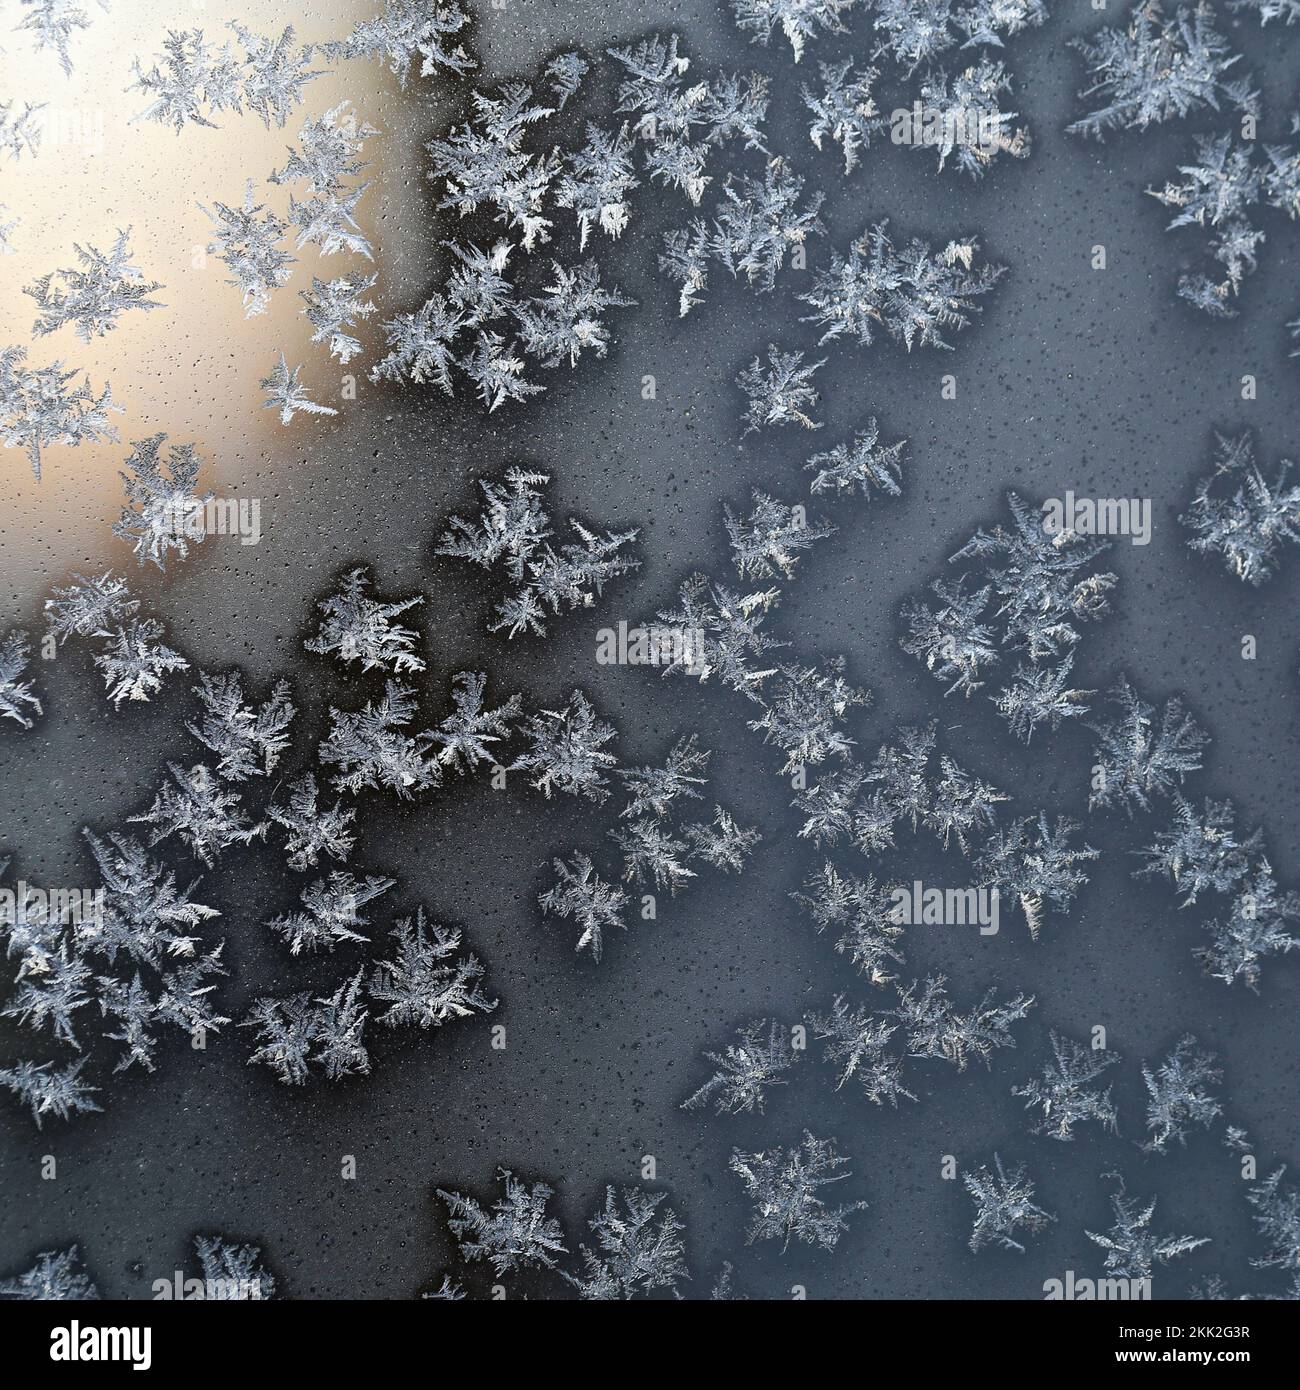 Cristalli di ghiaccio sulla superficie di un bicchiere congelato durante una fredda giornata invernale intorno a Natale in Finlandia. Bella stagione di vacanza closeup texture immagine. Foto Stock